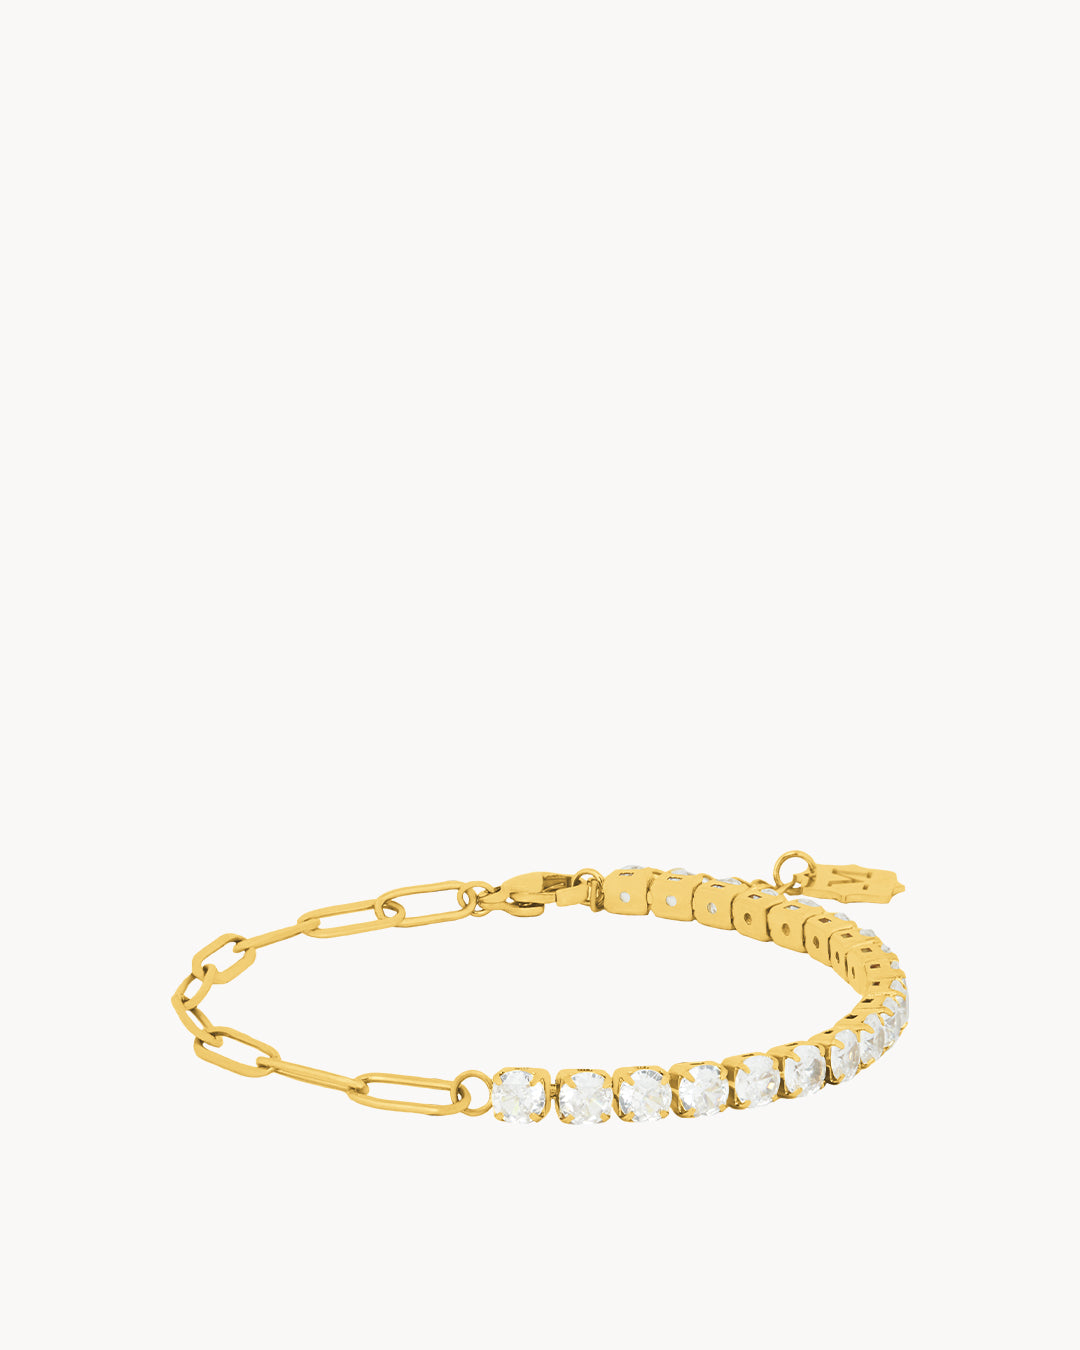 Starlight Charm Bracelet, Gold